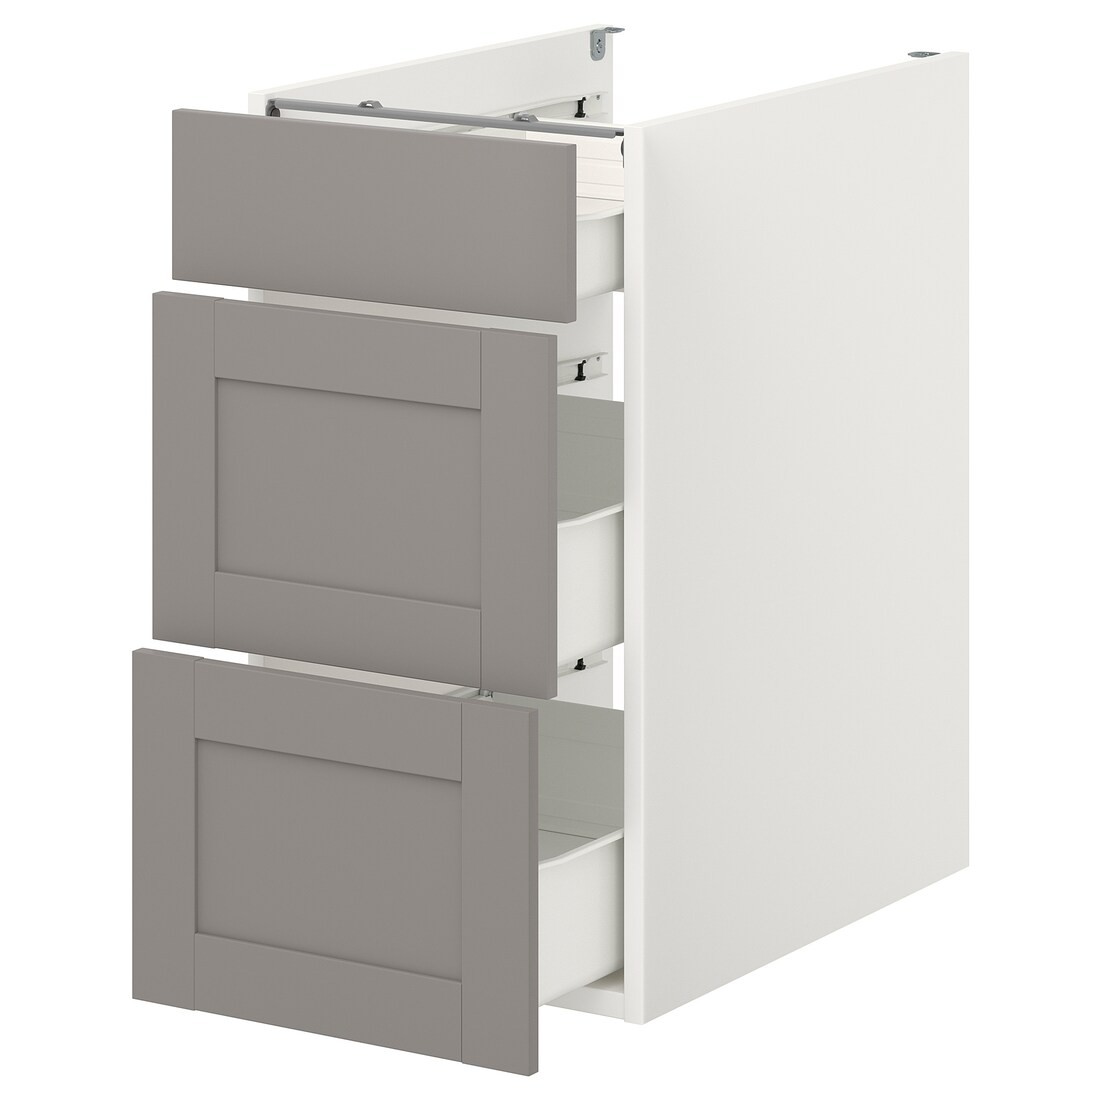 IKEA ENHET ЭНХЕТ Напольный шкаф с 3 ящиками, белый / серая рамка, 40x62x75 см 29320968 293.209.68